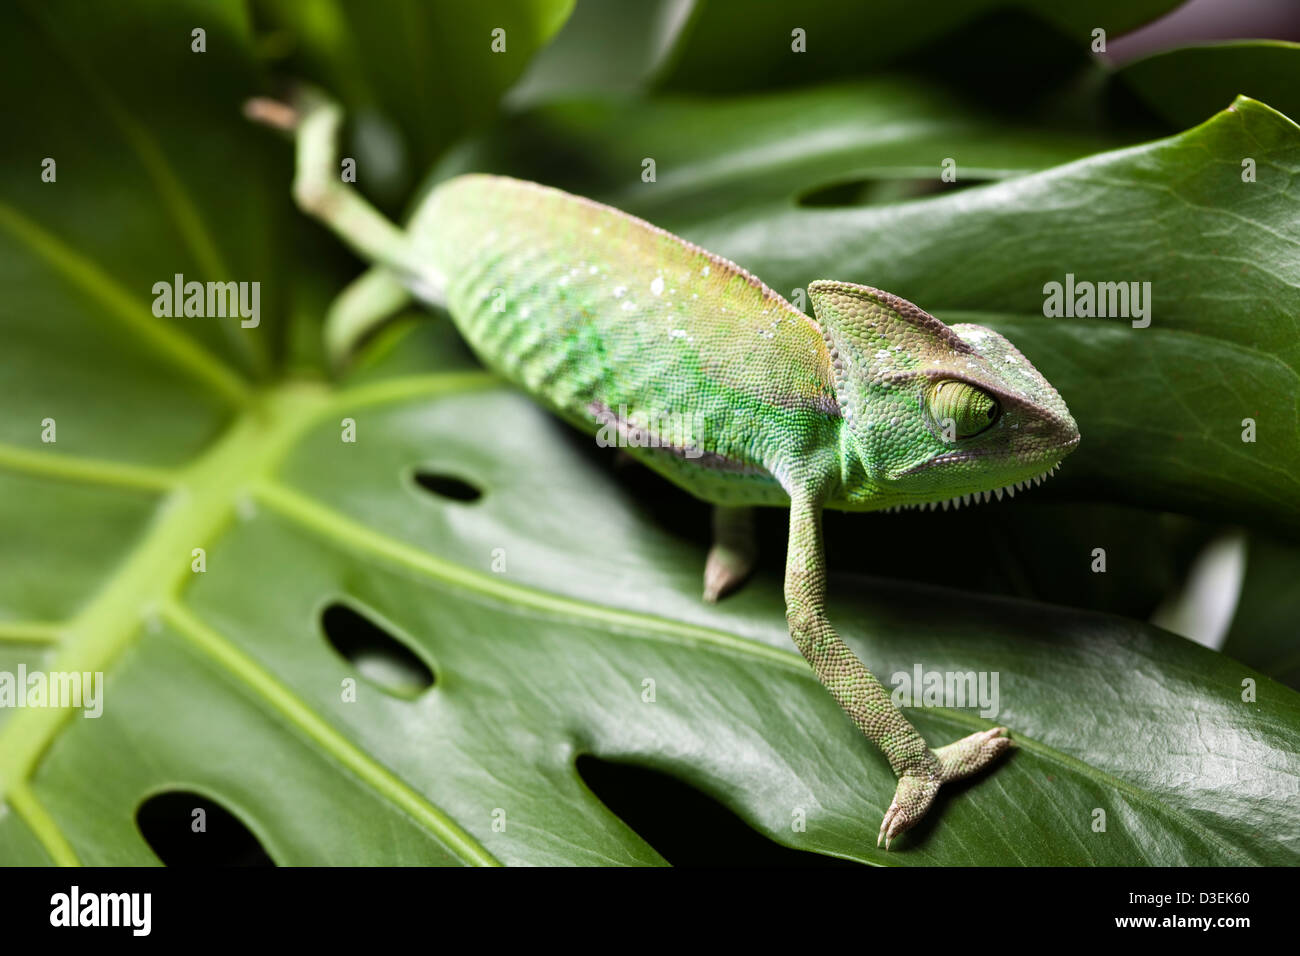 Chameleon on flower Stock Photo